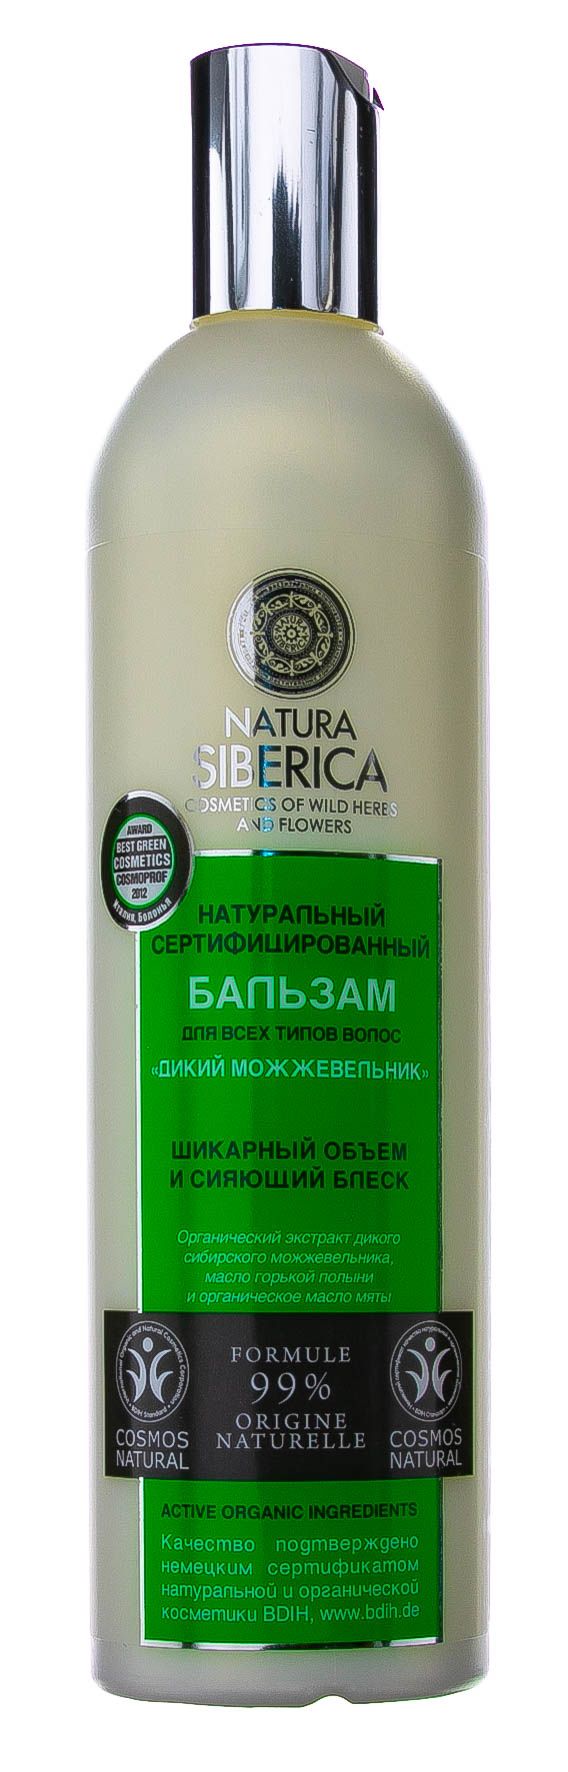 фото упаковки Natura Siberica Бальзам Дикий можжевельник